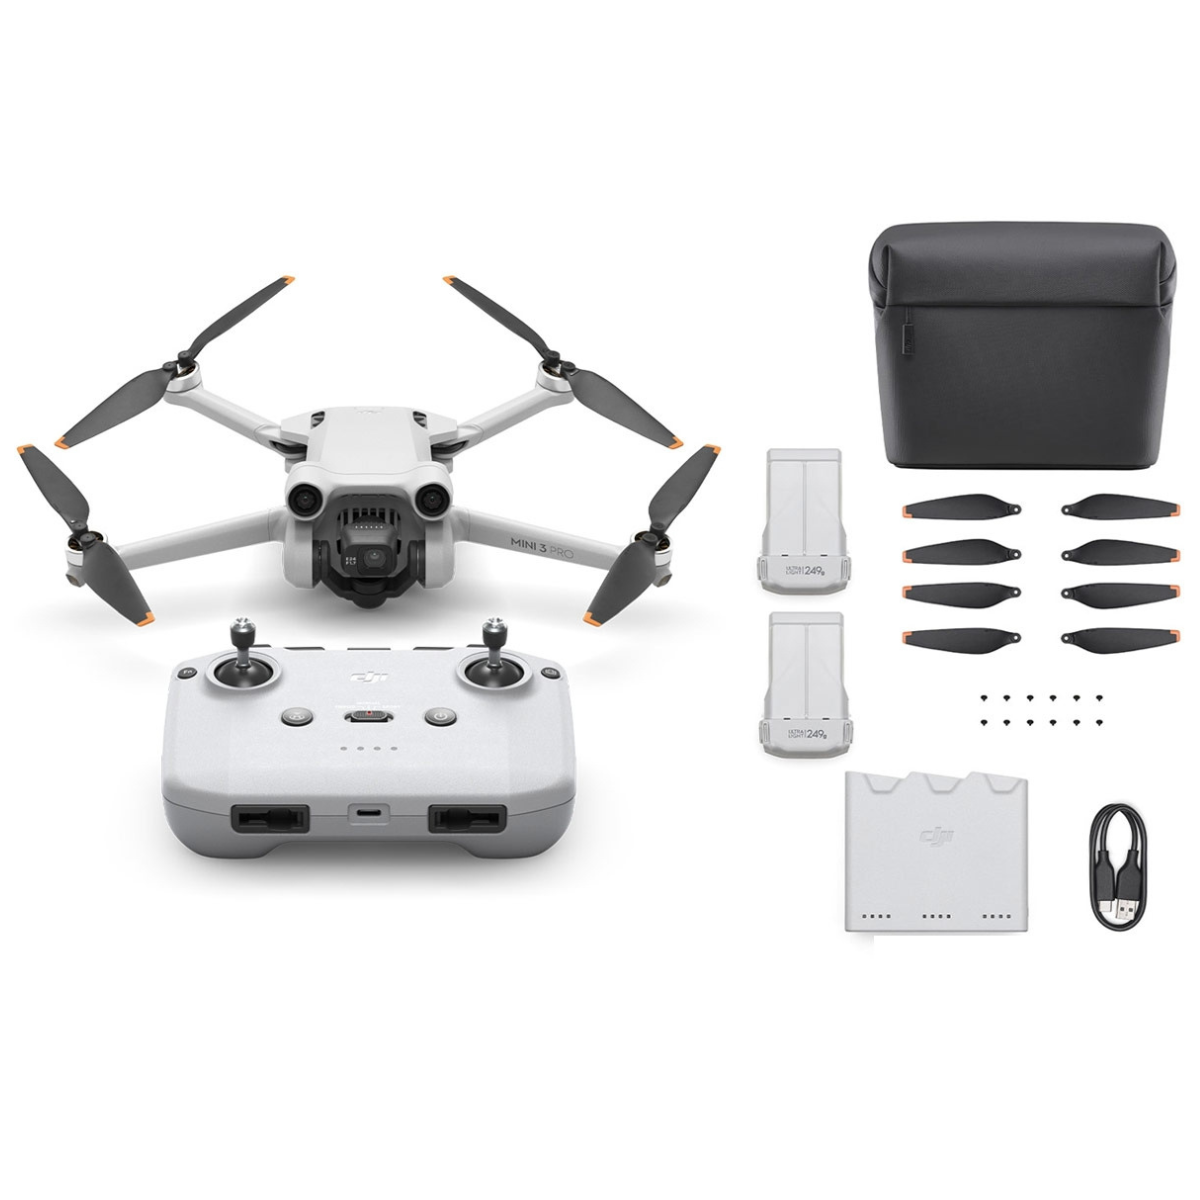 Drone Mini 3 Pro (sans radiocommande) - DJI - Hexadrone, la